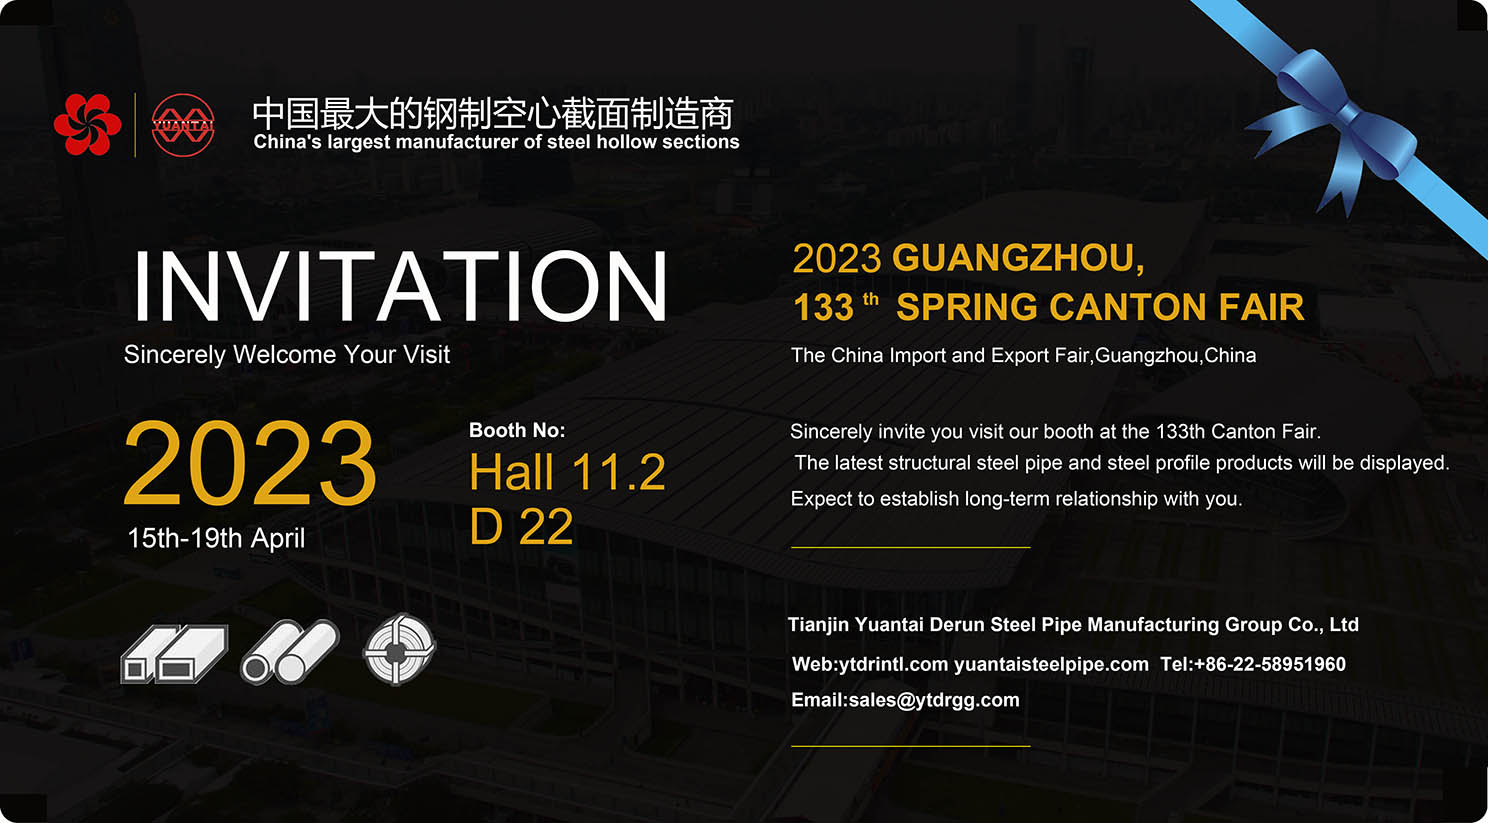 Carta de invitación para a 133ª Feira de Cantón-Tianjin Yuantai Derun Steel Pipe Manufacturing Group